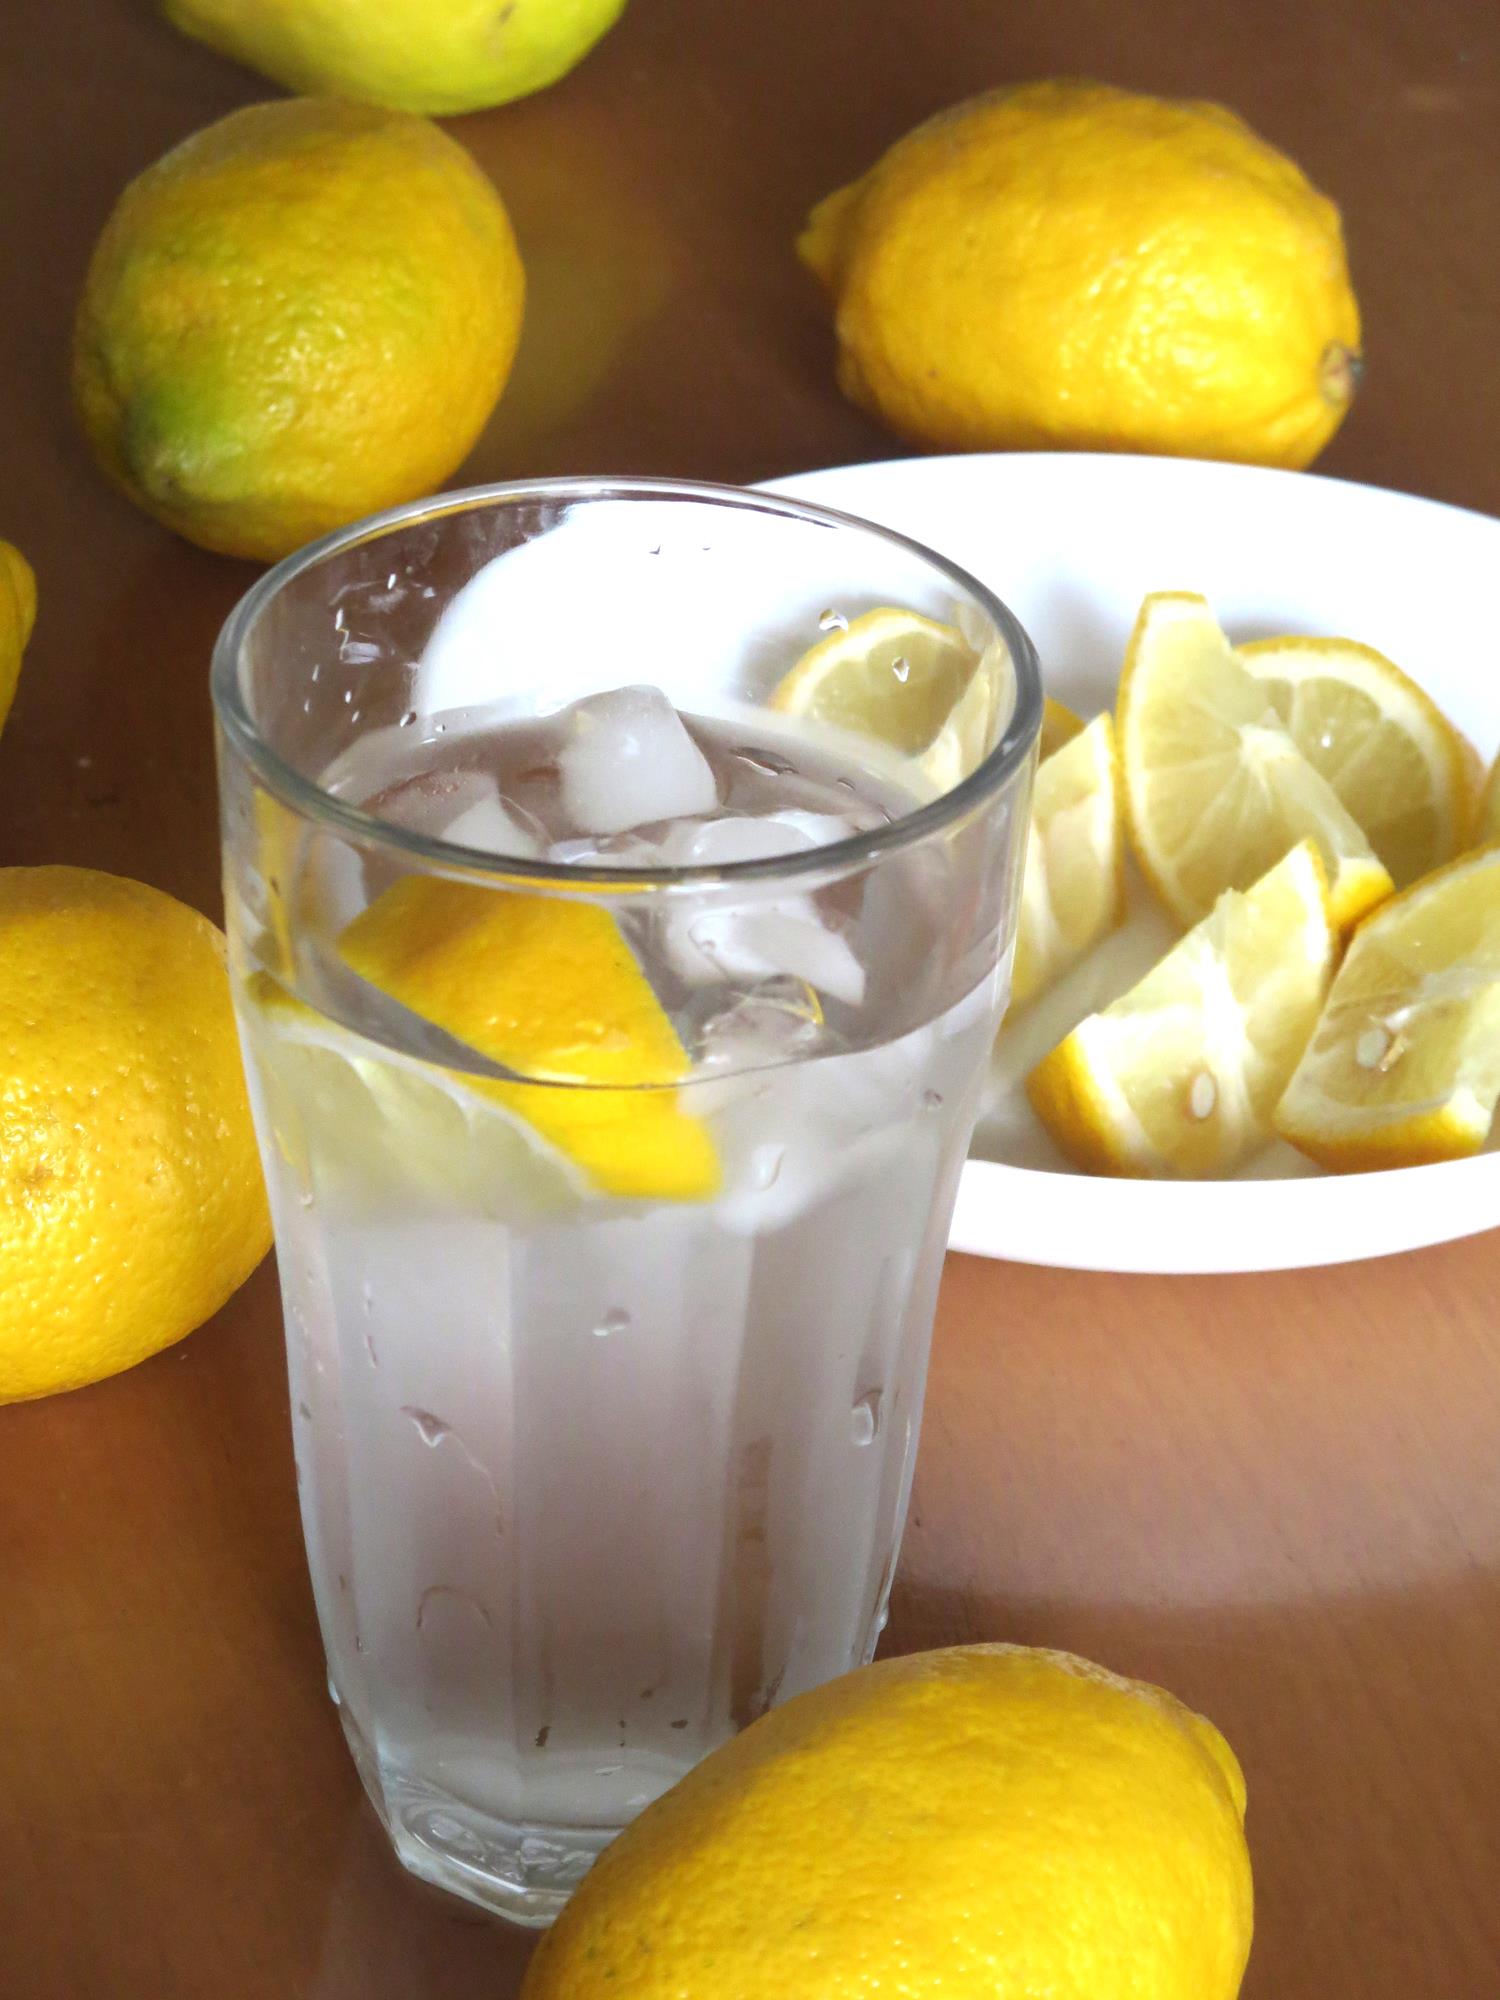 檸檬醋治療喉嚨痛,檸檬醋功效,檸檬醋